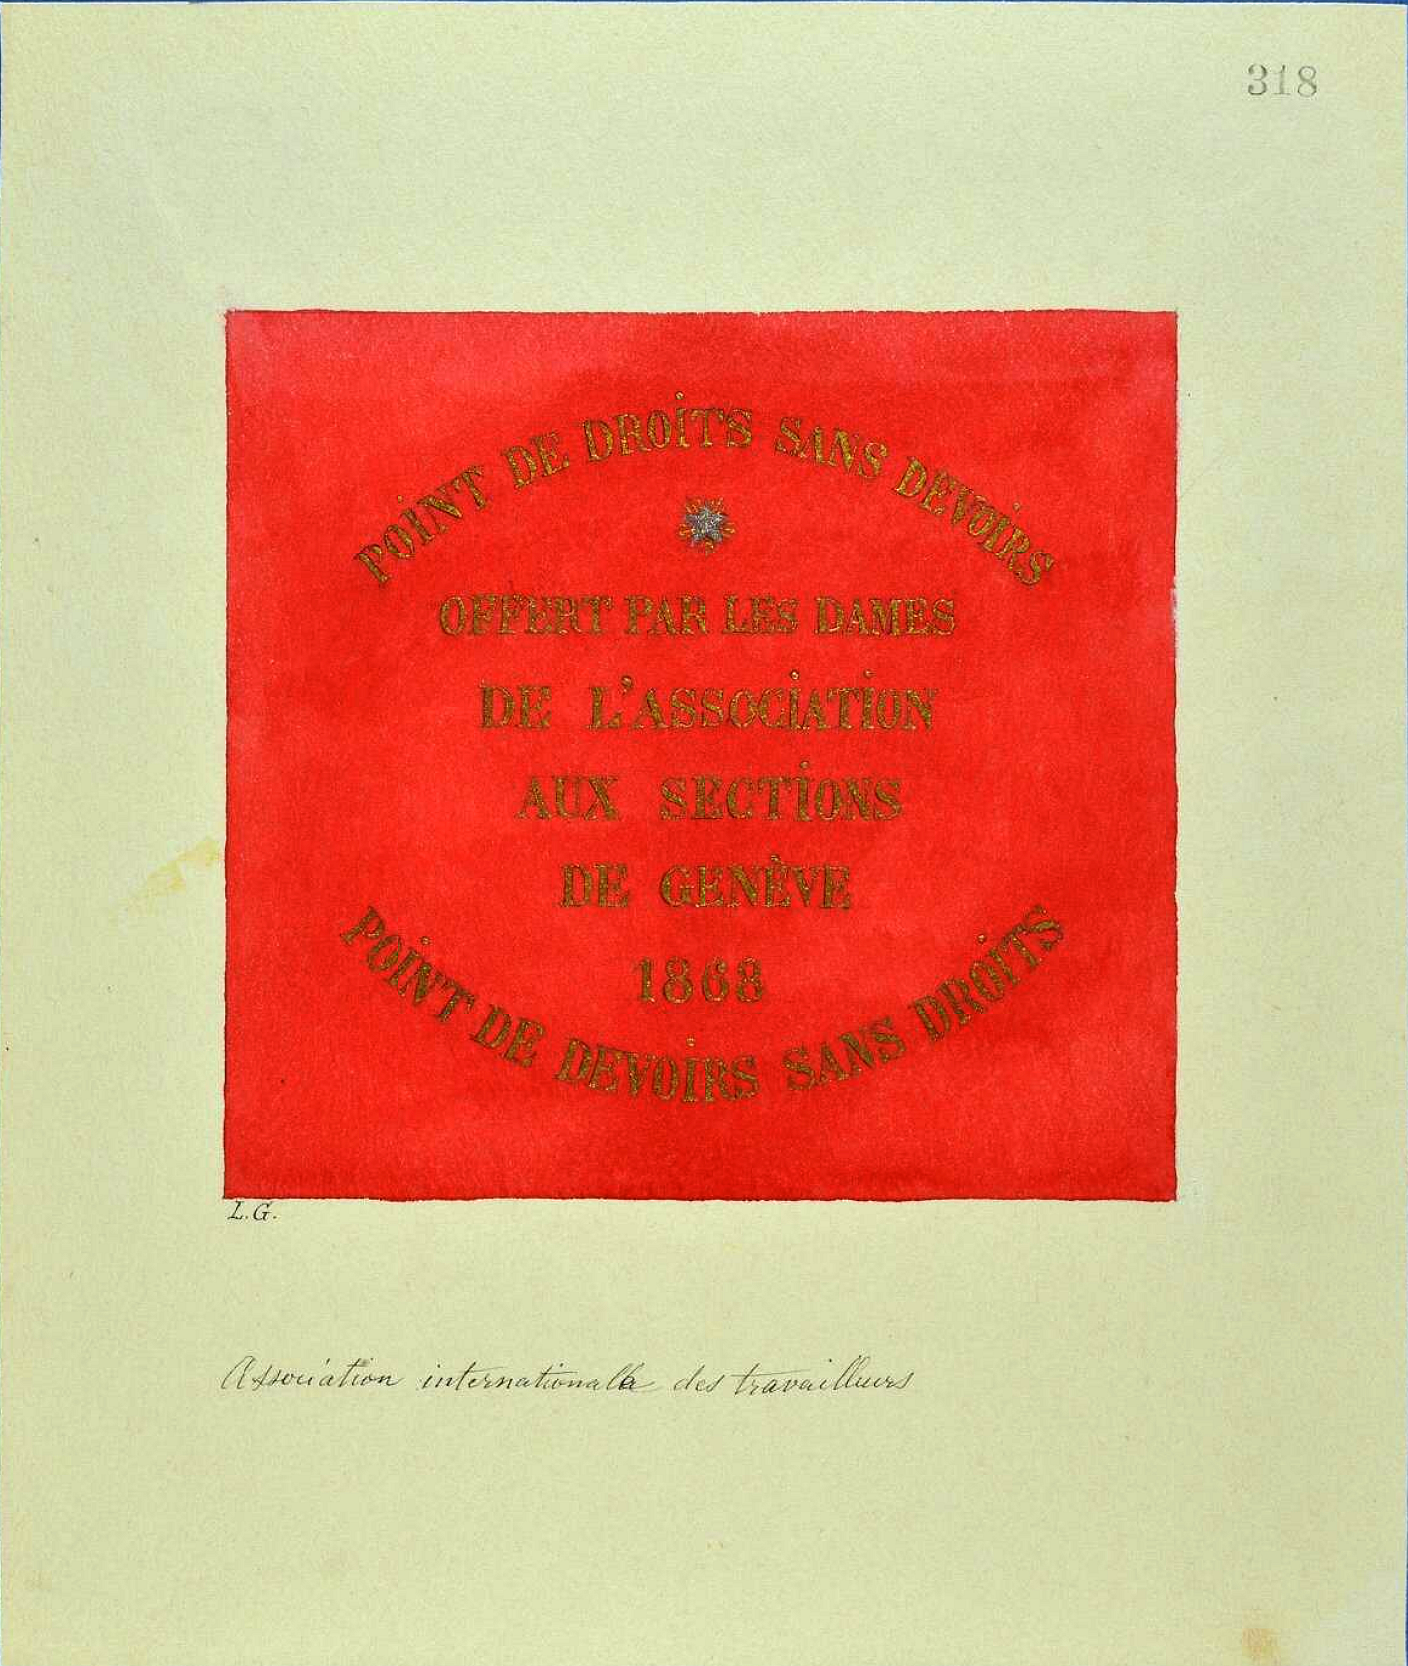 Drapeau de la section genevoise de l'Association internationale des travailleurs (1868) offert par les femmes de l'association avec l'inscription «pas de devoirs sans droits, pas de droits sans devoirs».